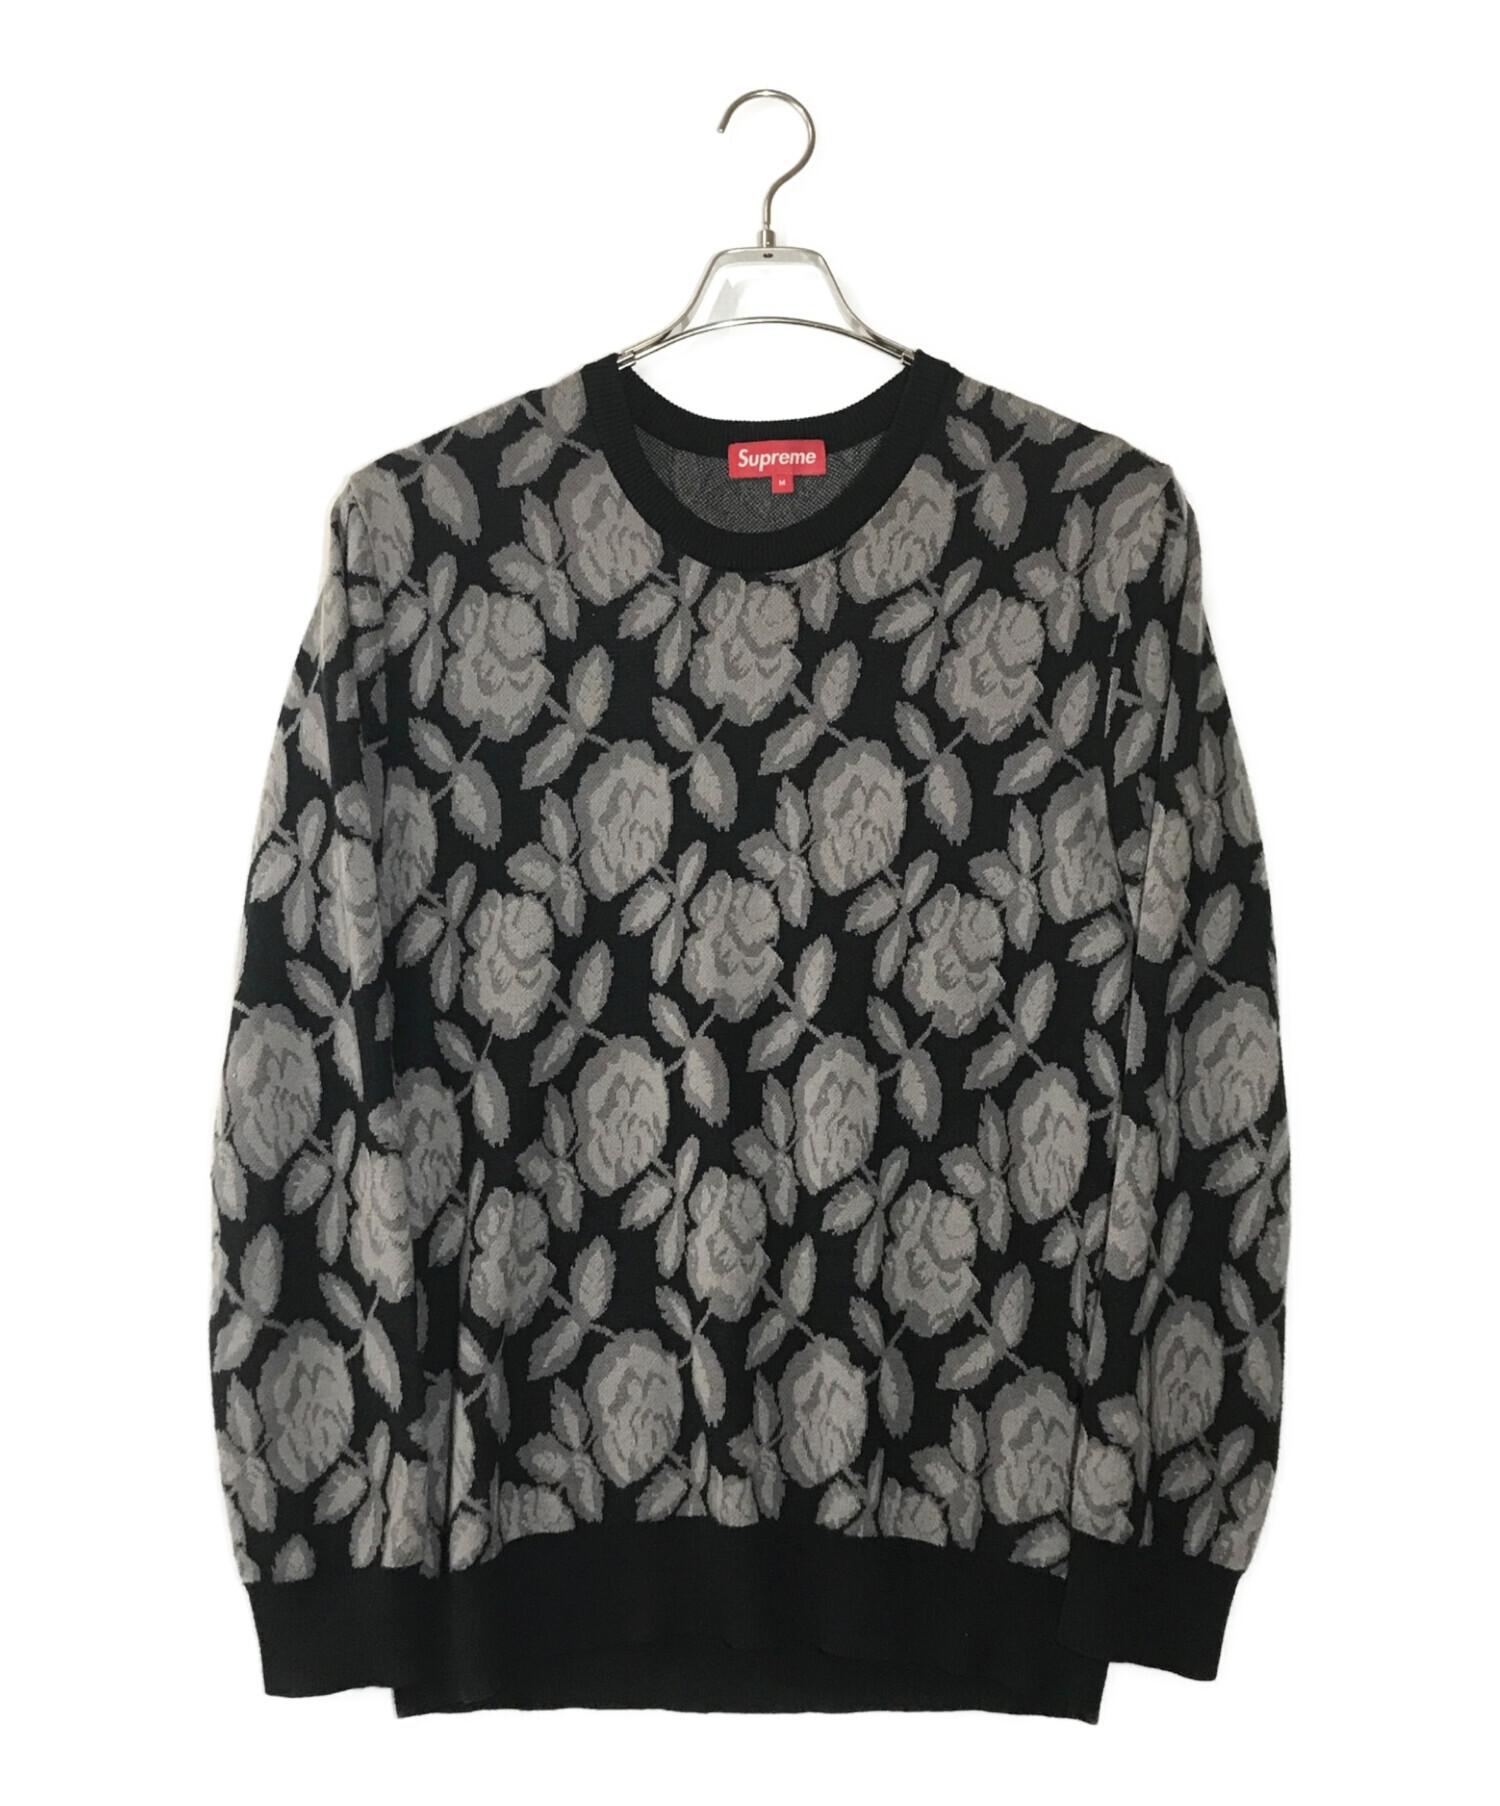 Supreme Rose Sweater ローズセーター - ニット/セーター